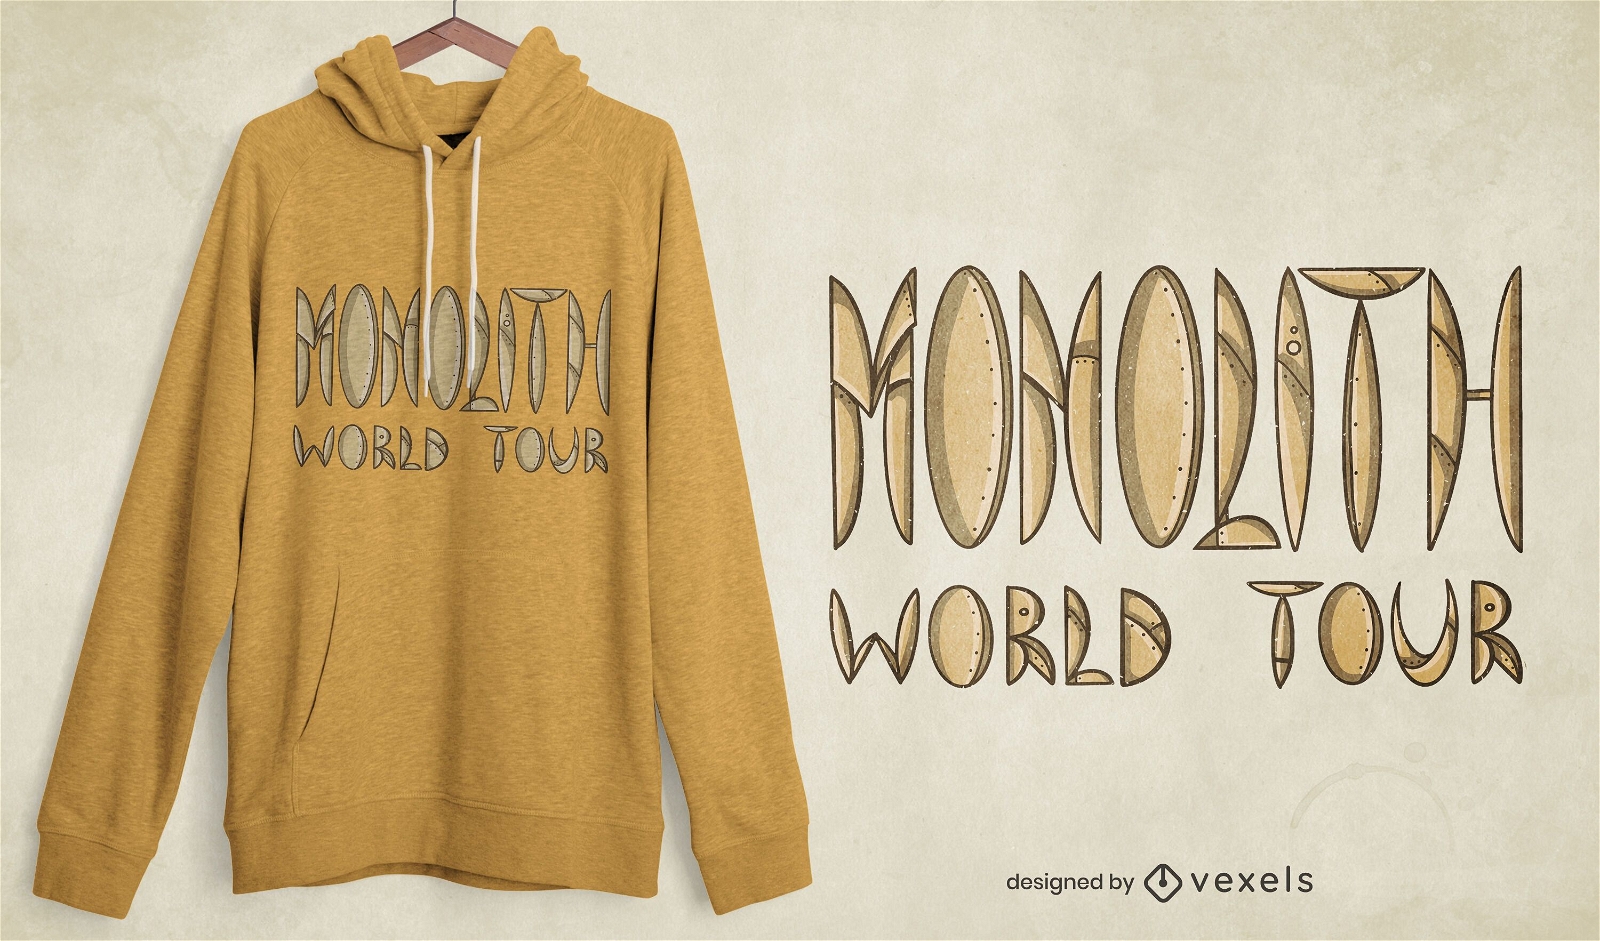 Dise?o de camiseta Monolith World Tour